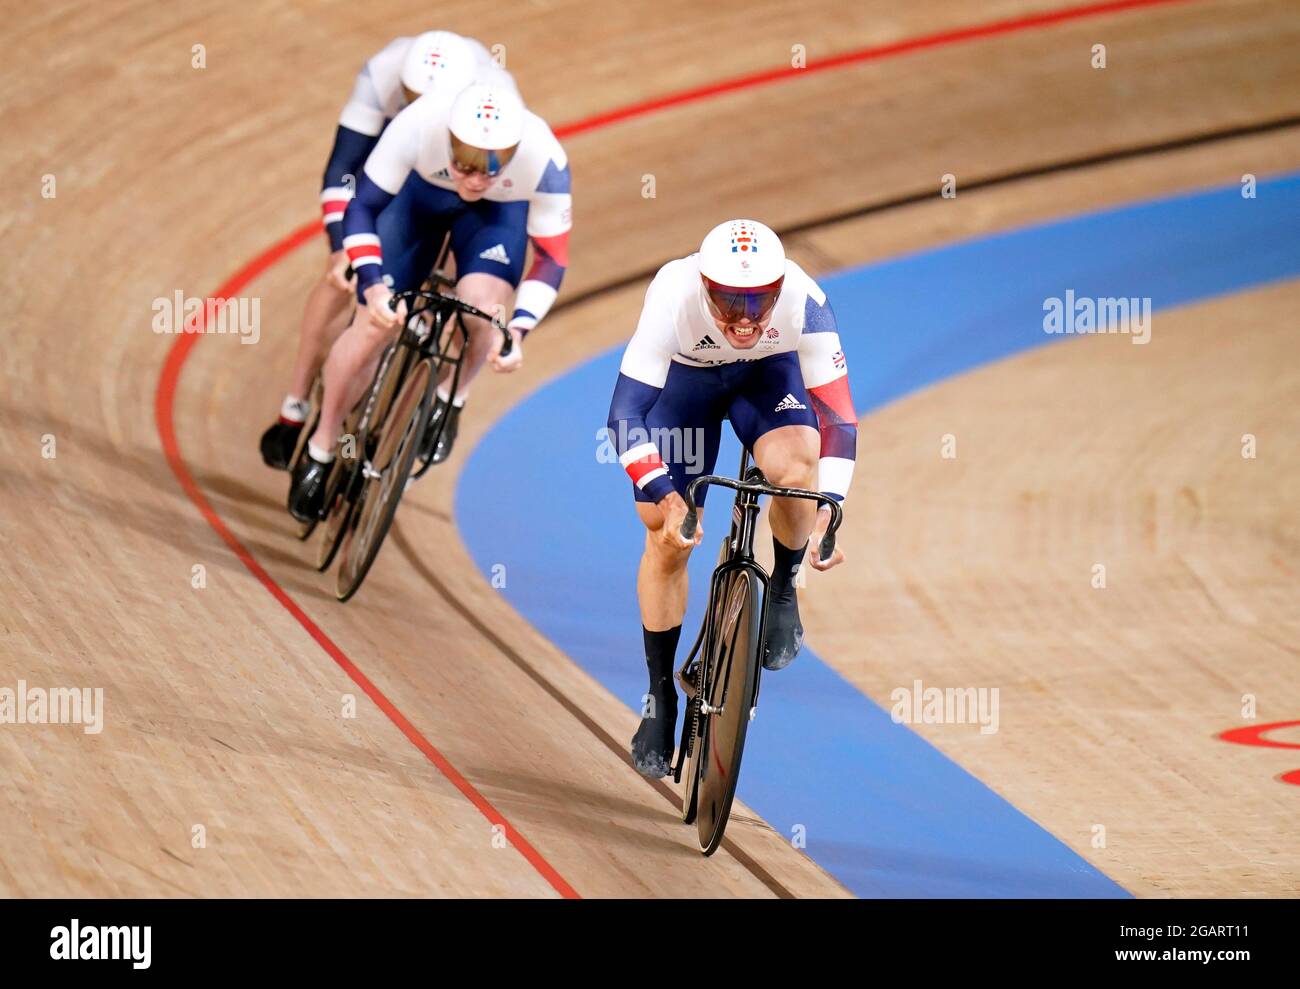 L'équipe de Grande-Bretagne lors d'une séance d'entraînement à vélo sur piste au vélodrome d'Izu, le neuvième jour des Jeux Olympiques de Tokyo en 2020 au Japon. Date de la photo: Dimanche 1er août 2021. Banque D'Images